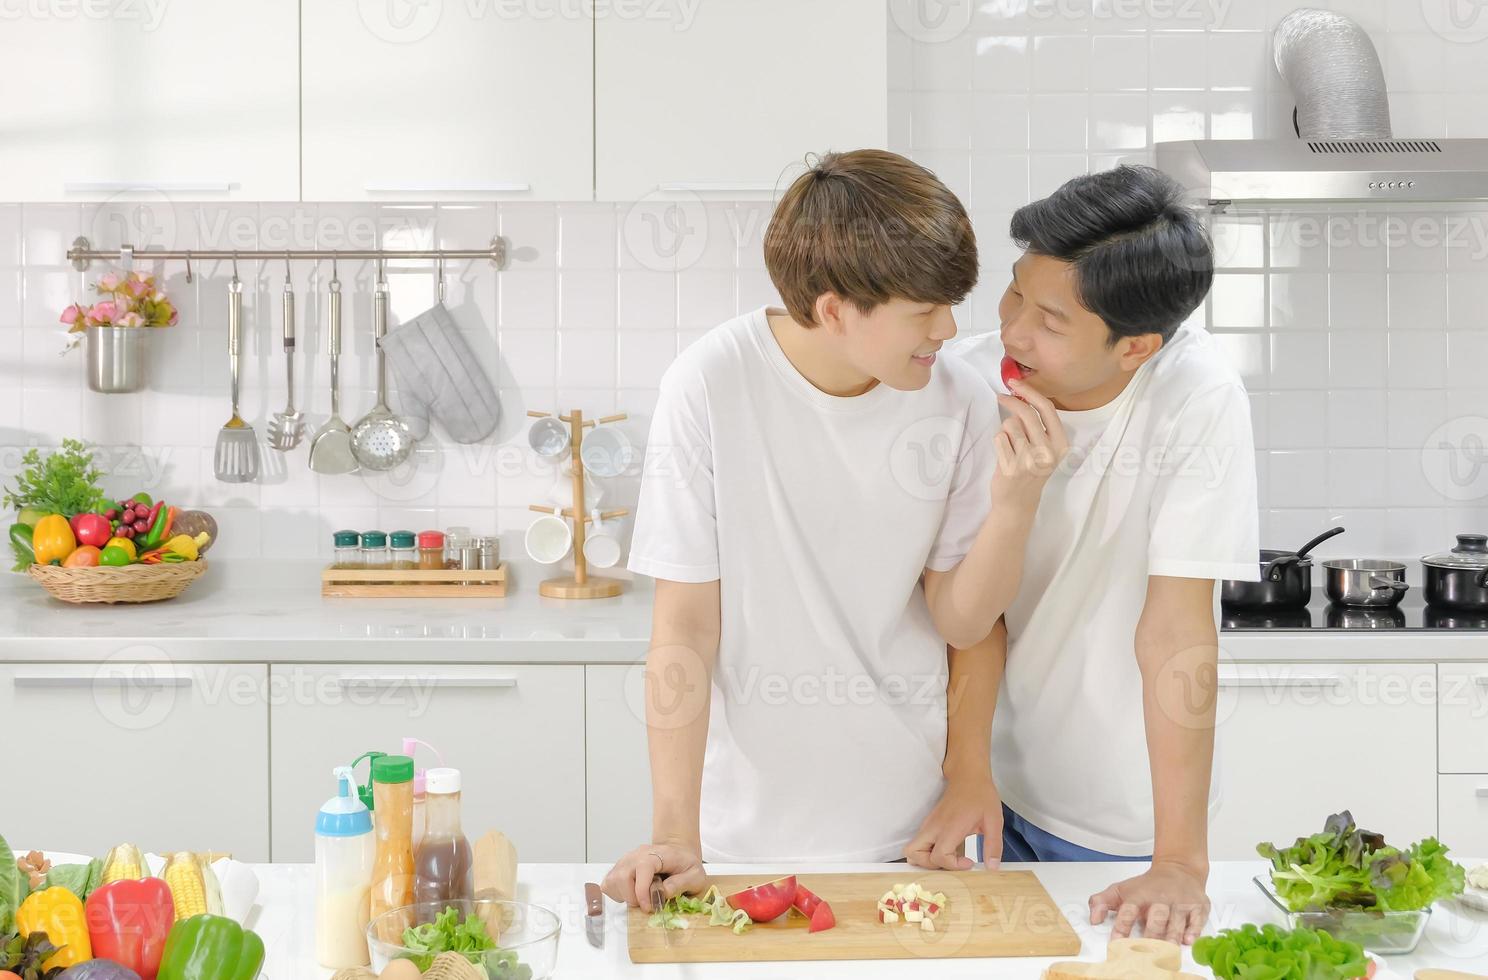 intima asiatiska unga manliga par har en romantisk stund tillsammans i köket under matlagning. Hbt hemlivskoncept. selektiv fokusering. foto